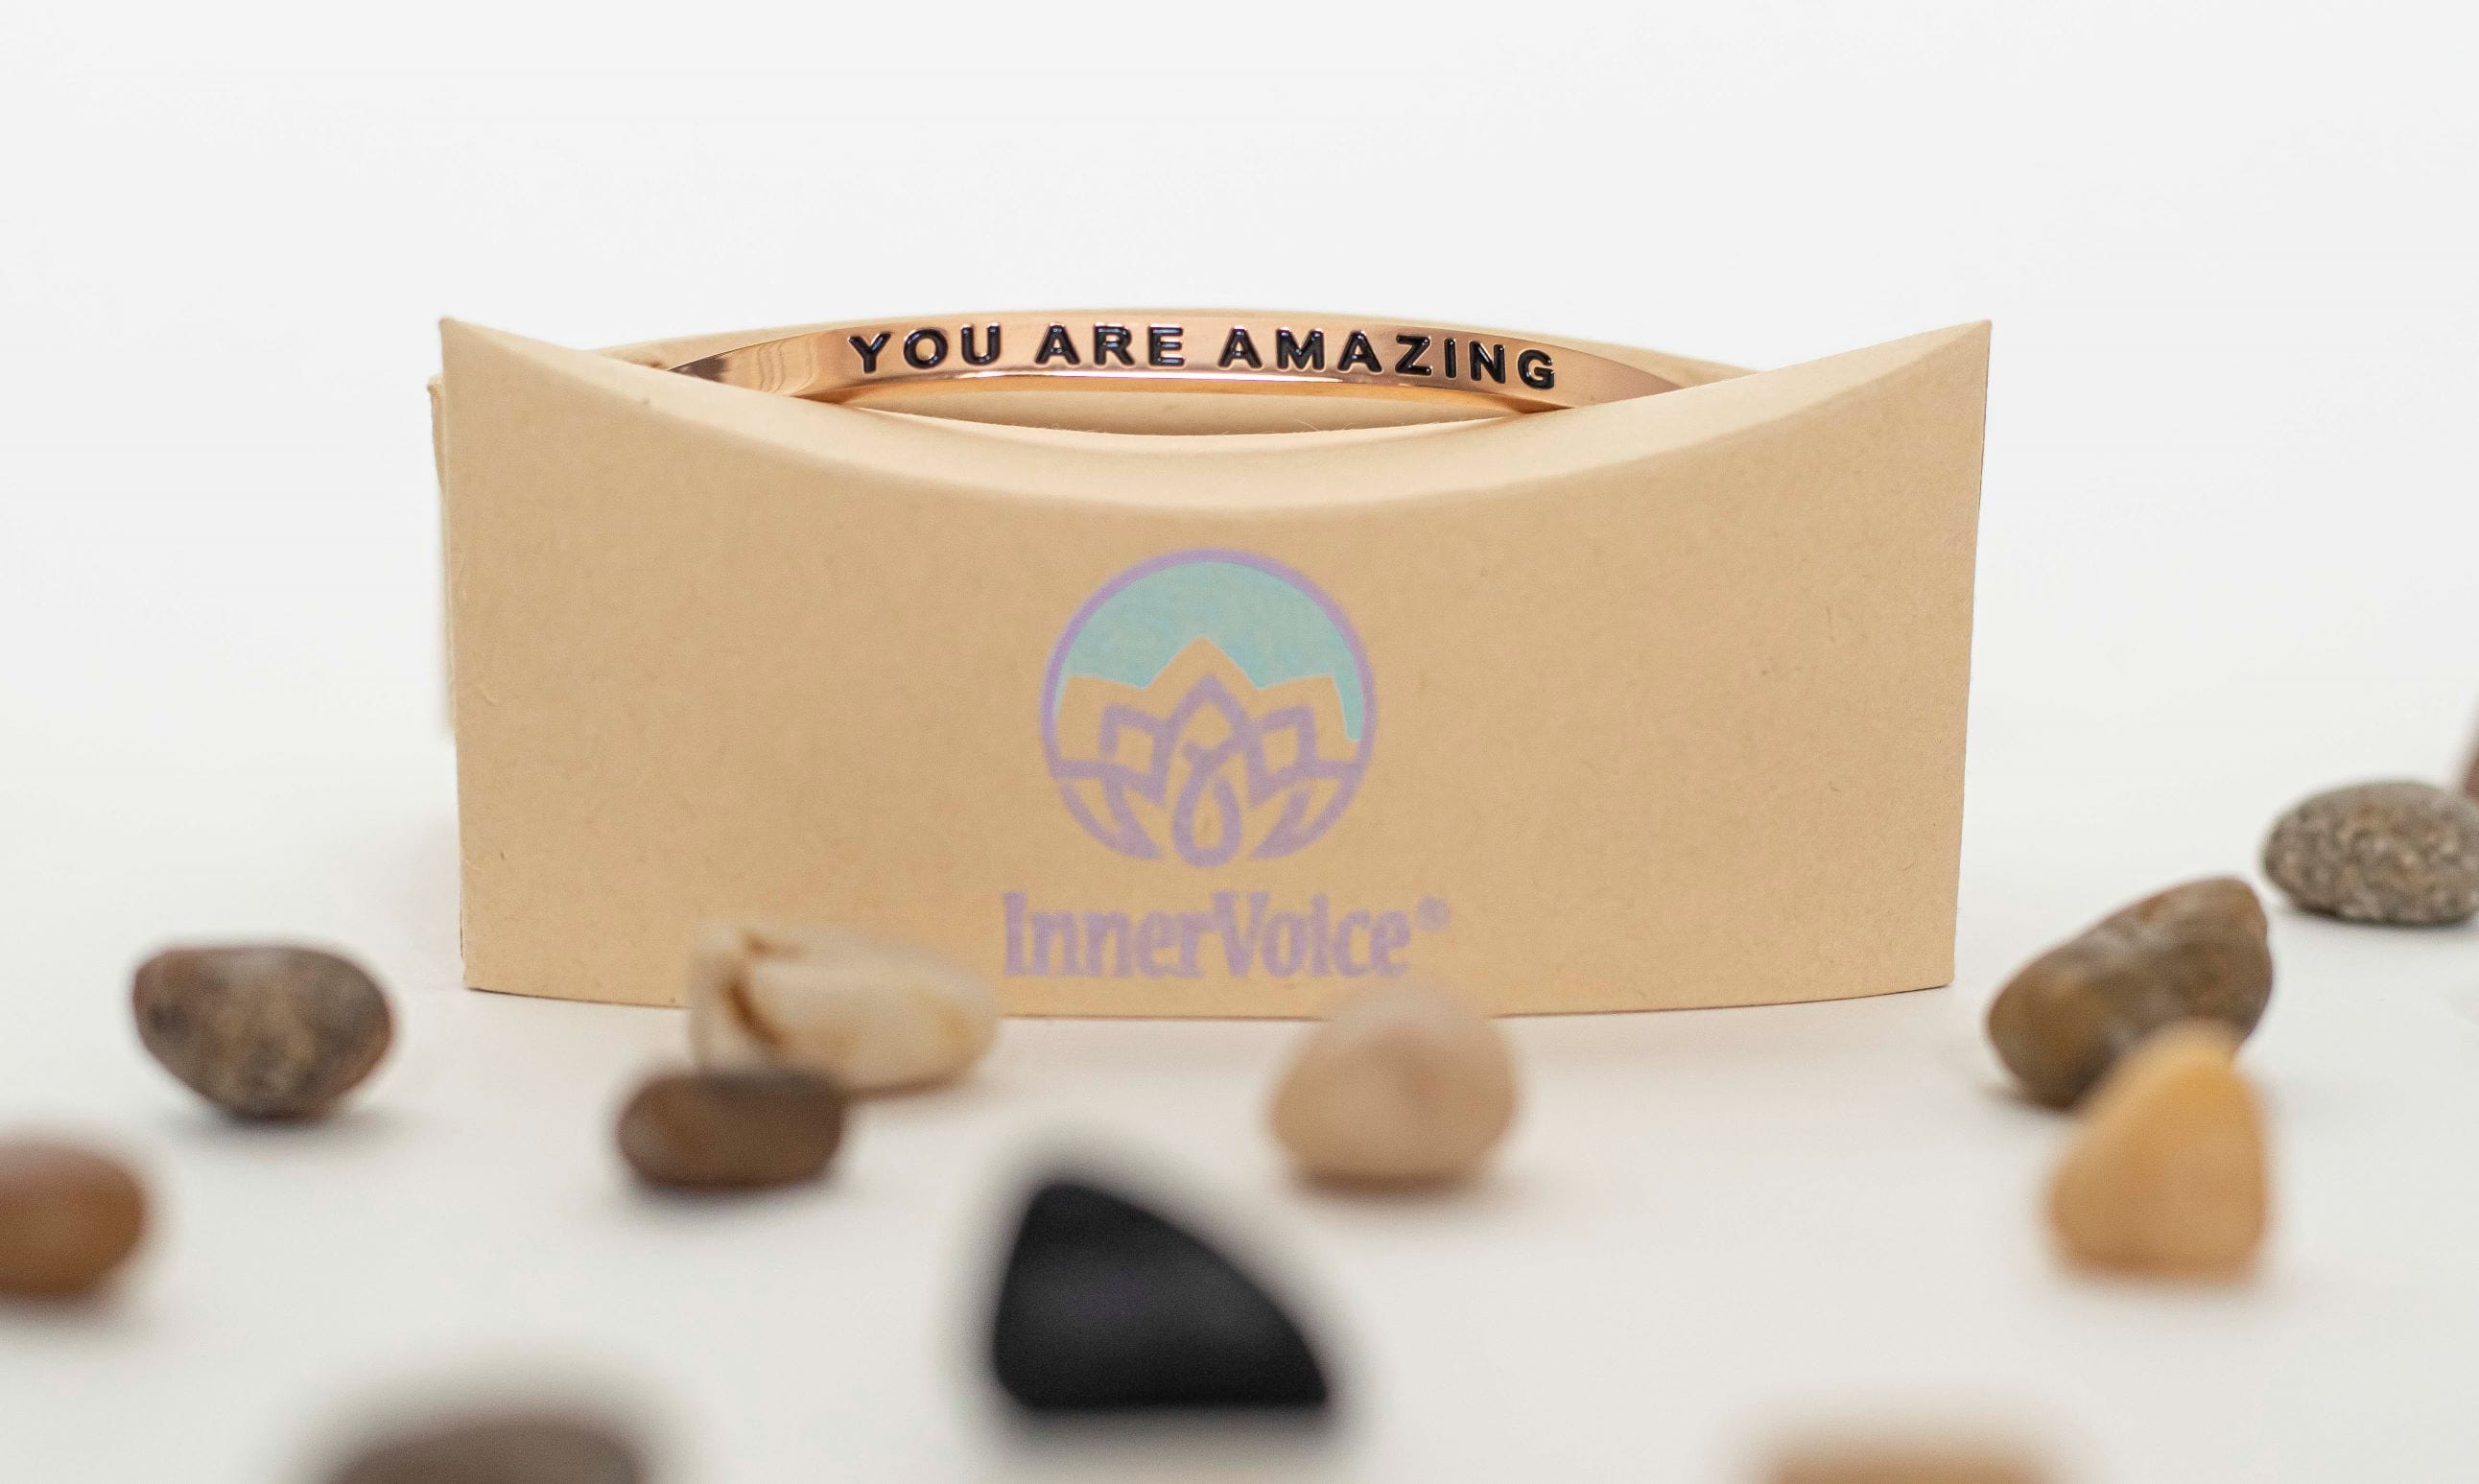 L'aventure t'attend: InnerVoice Bracelet